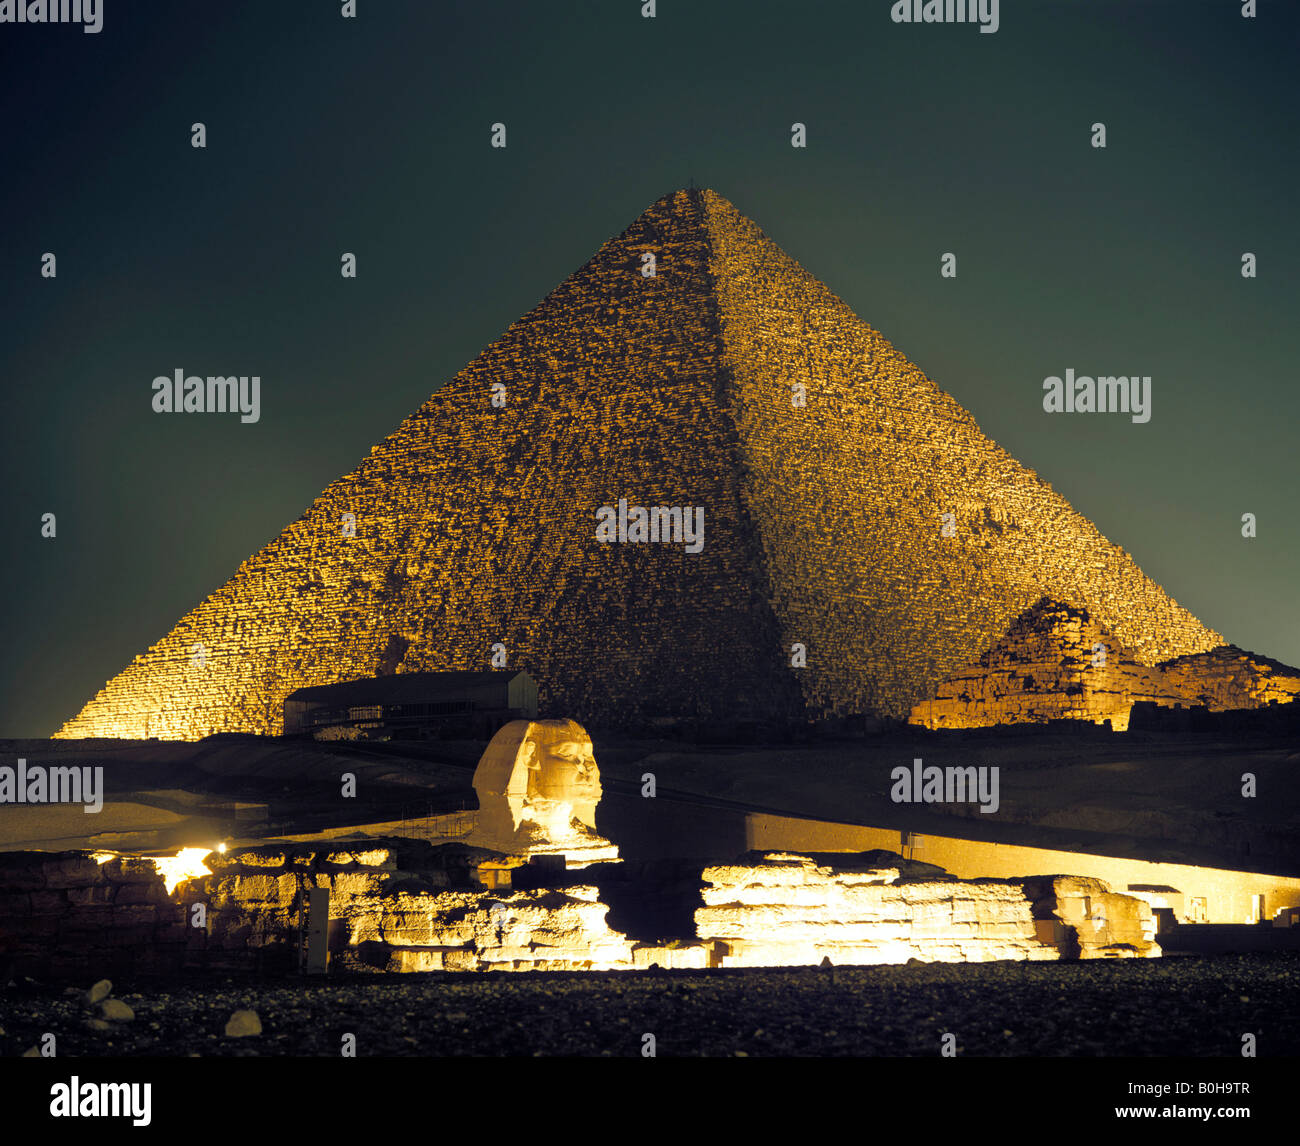 Photo de la pyramide de Gizeh, complexe de nuit grande pyramide de Gizeh, Sphinx, Le Caire, Egypte Banque D'Images